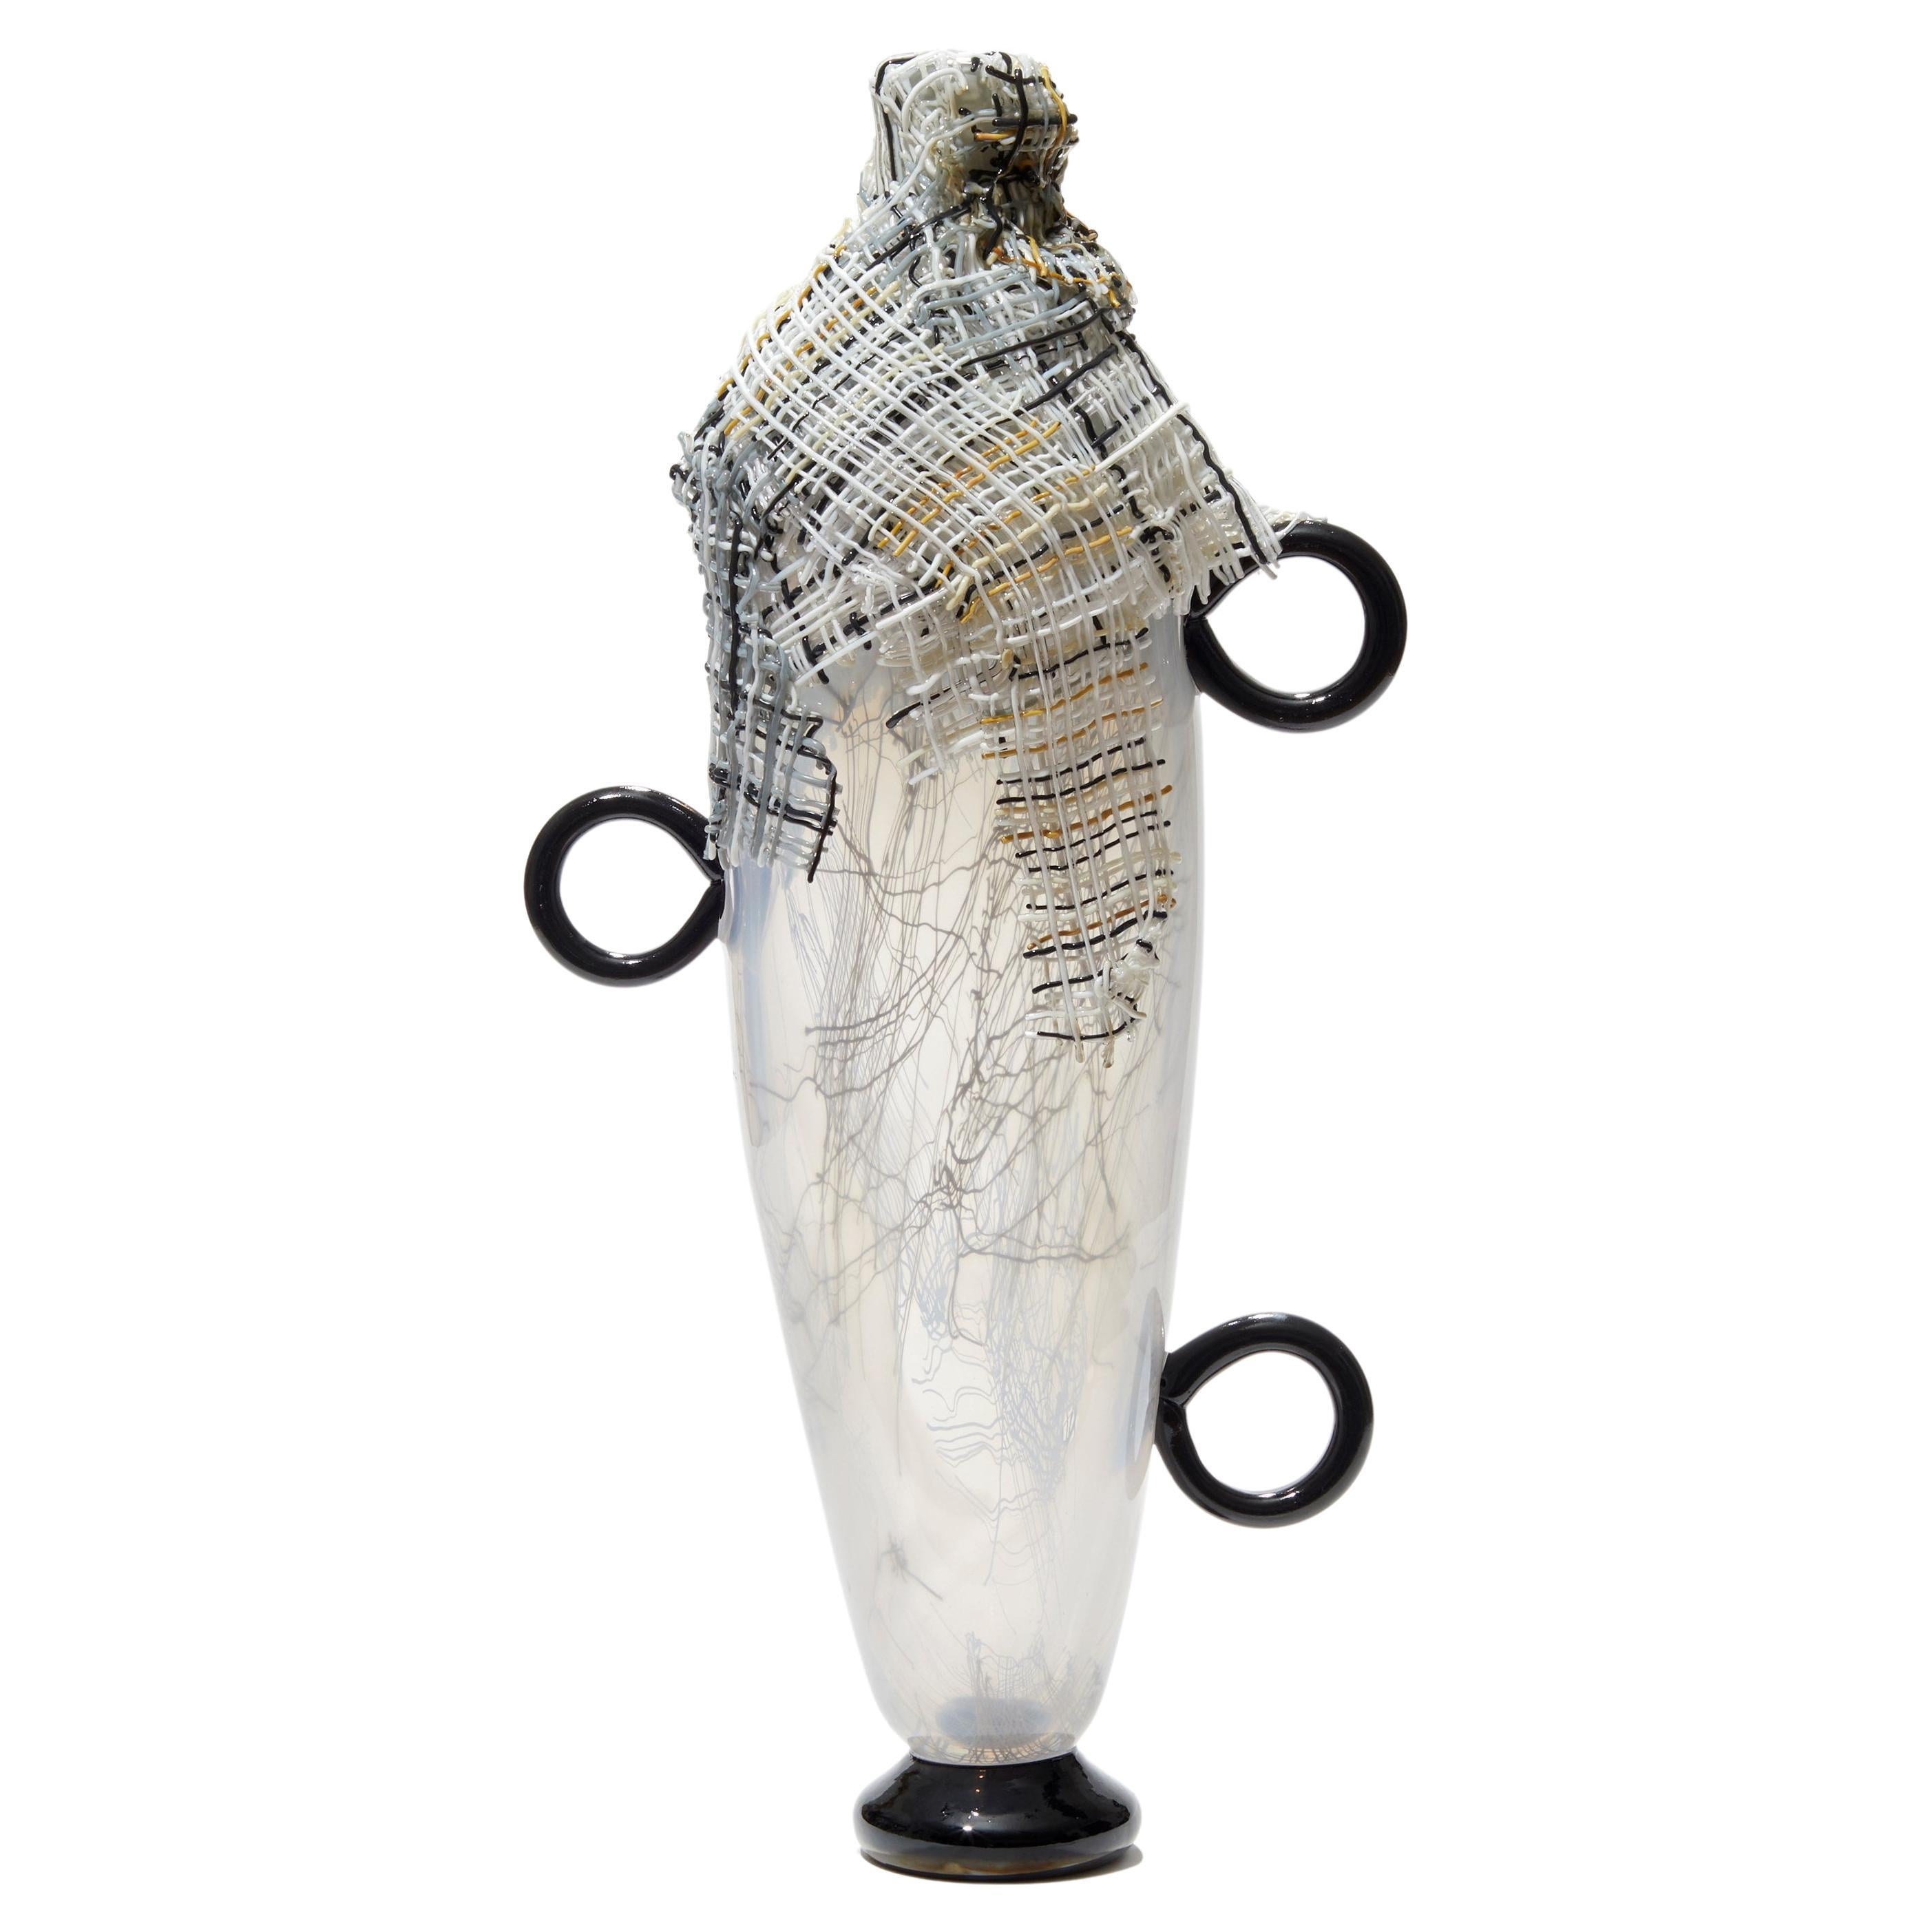 Only Hope Remains II, une sculpture sur pied en verre monochrome de Cathryn Shilling